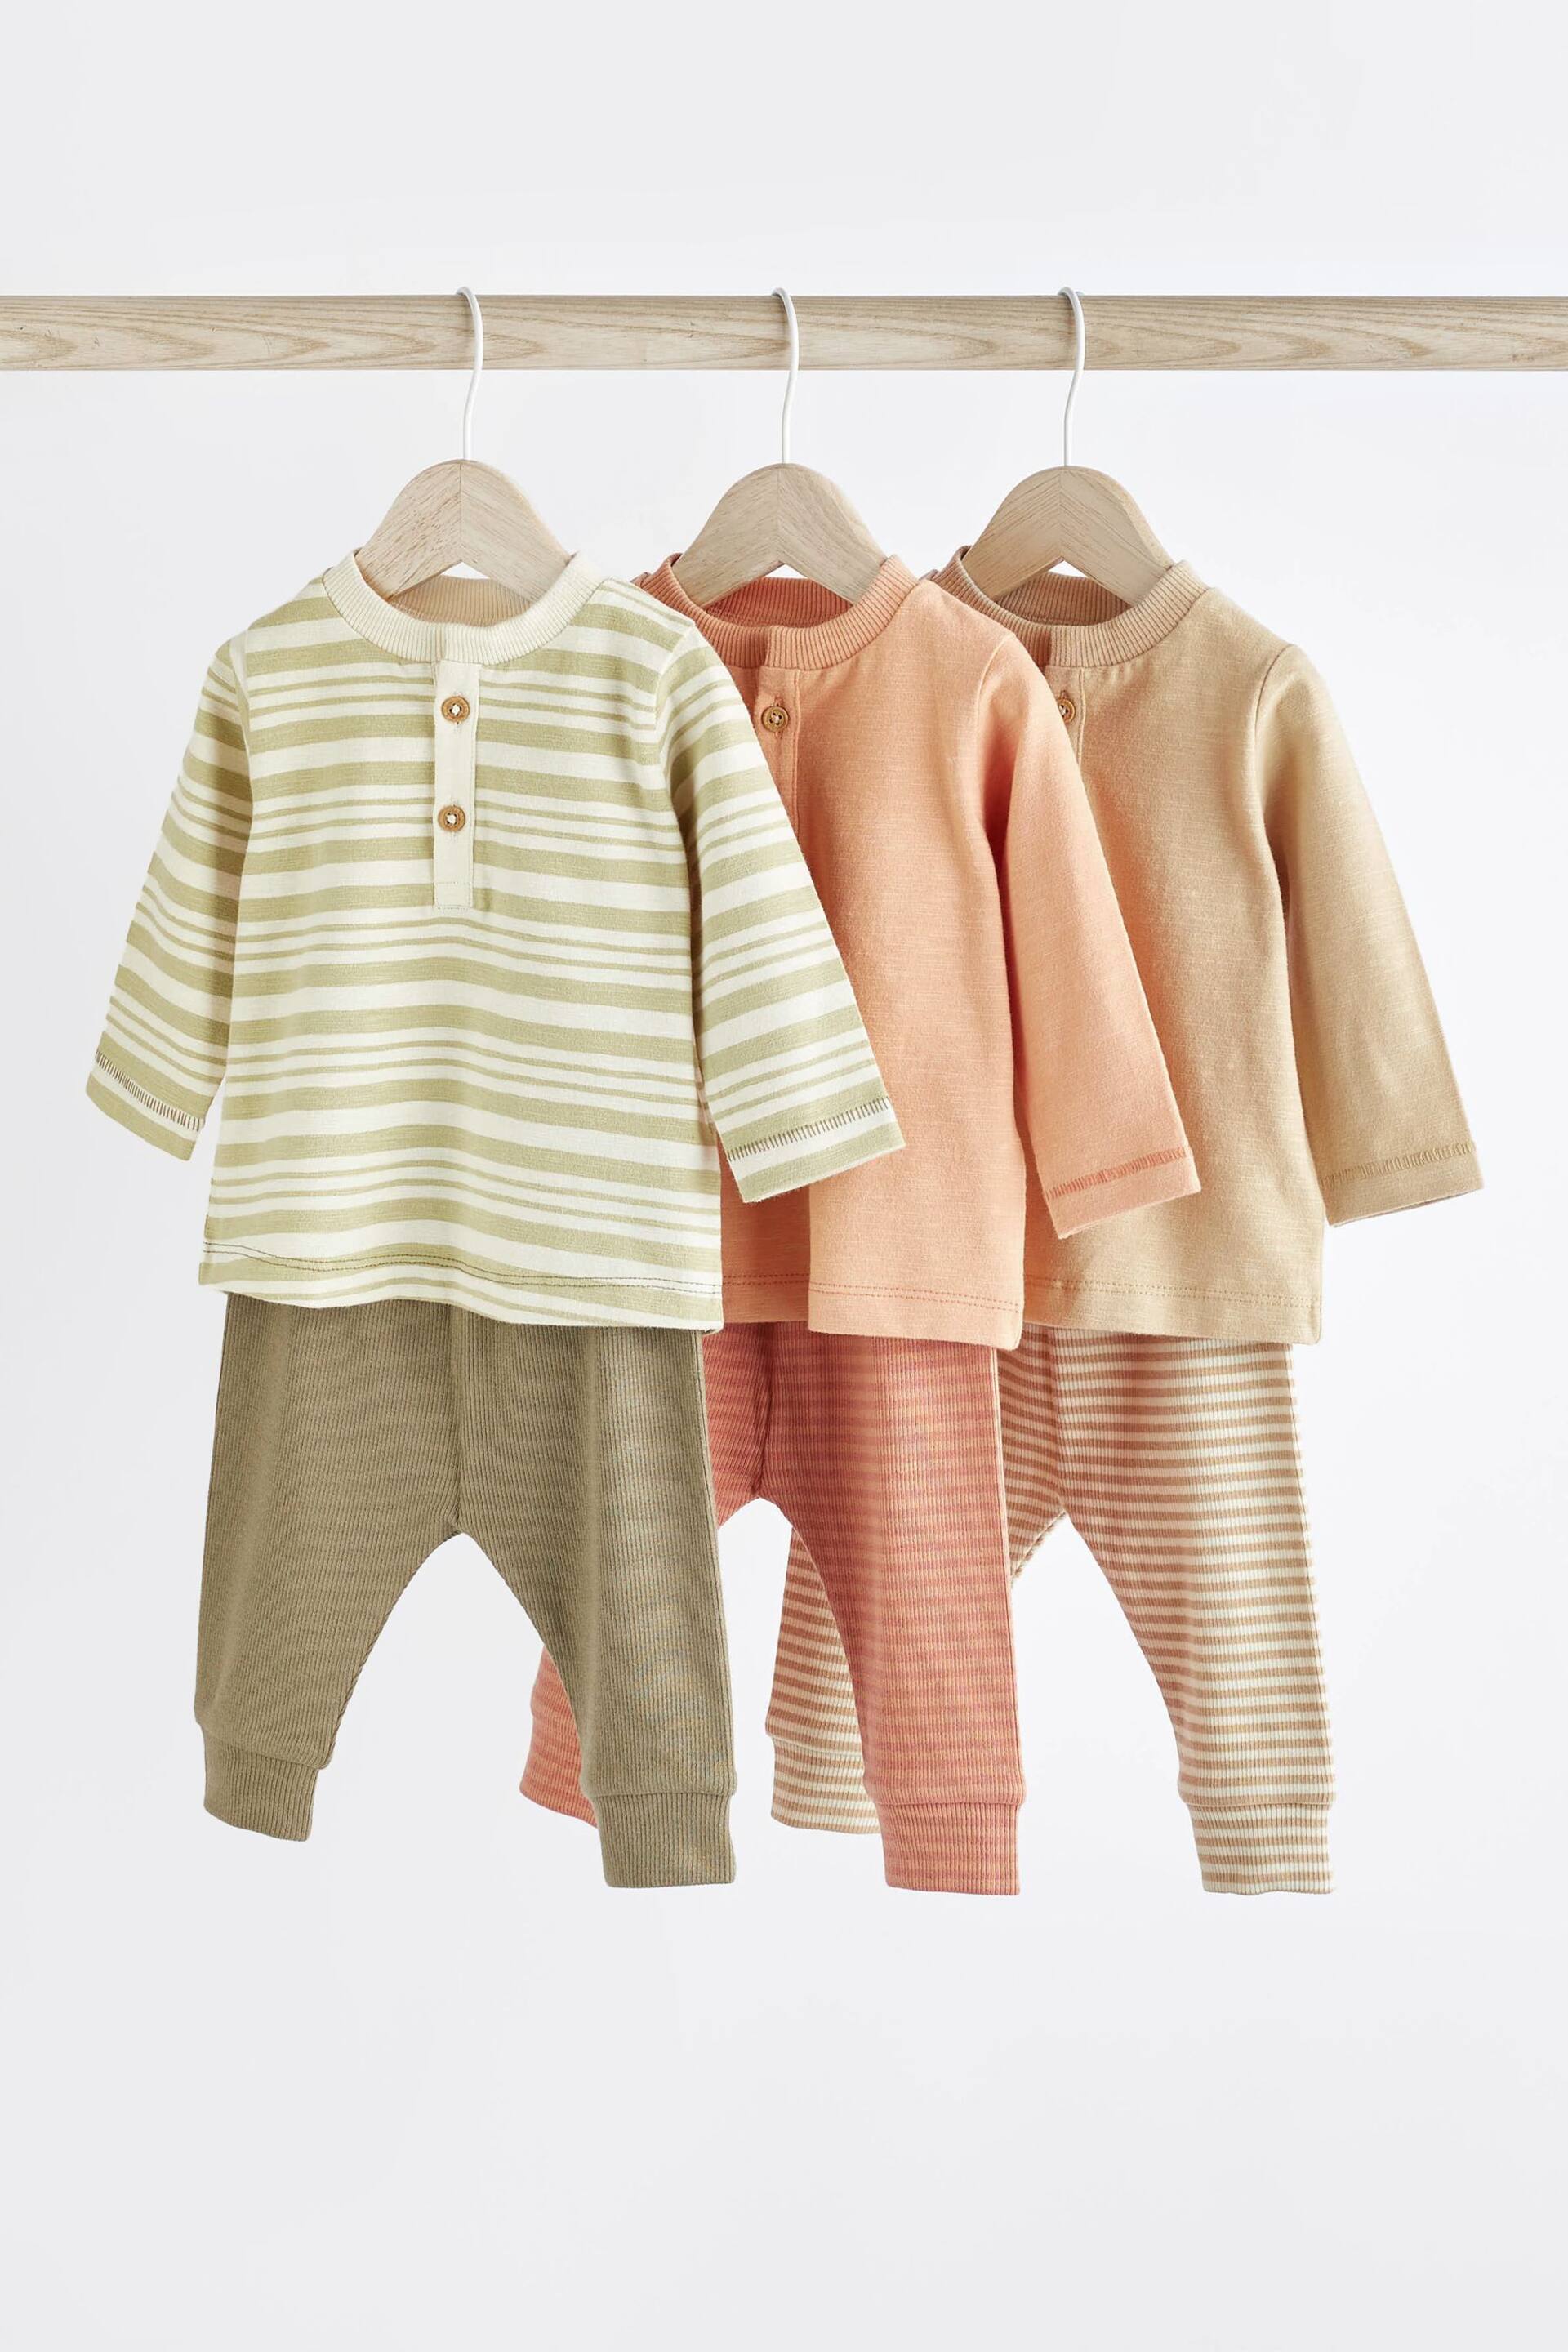 Orange/Sage Green Stripe Baby T-Shirts And Leggings Set 6 Pack - Image 1 of 12